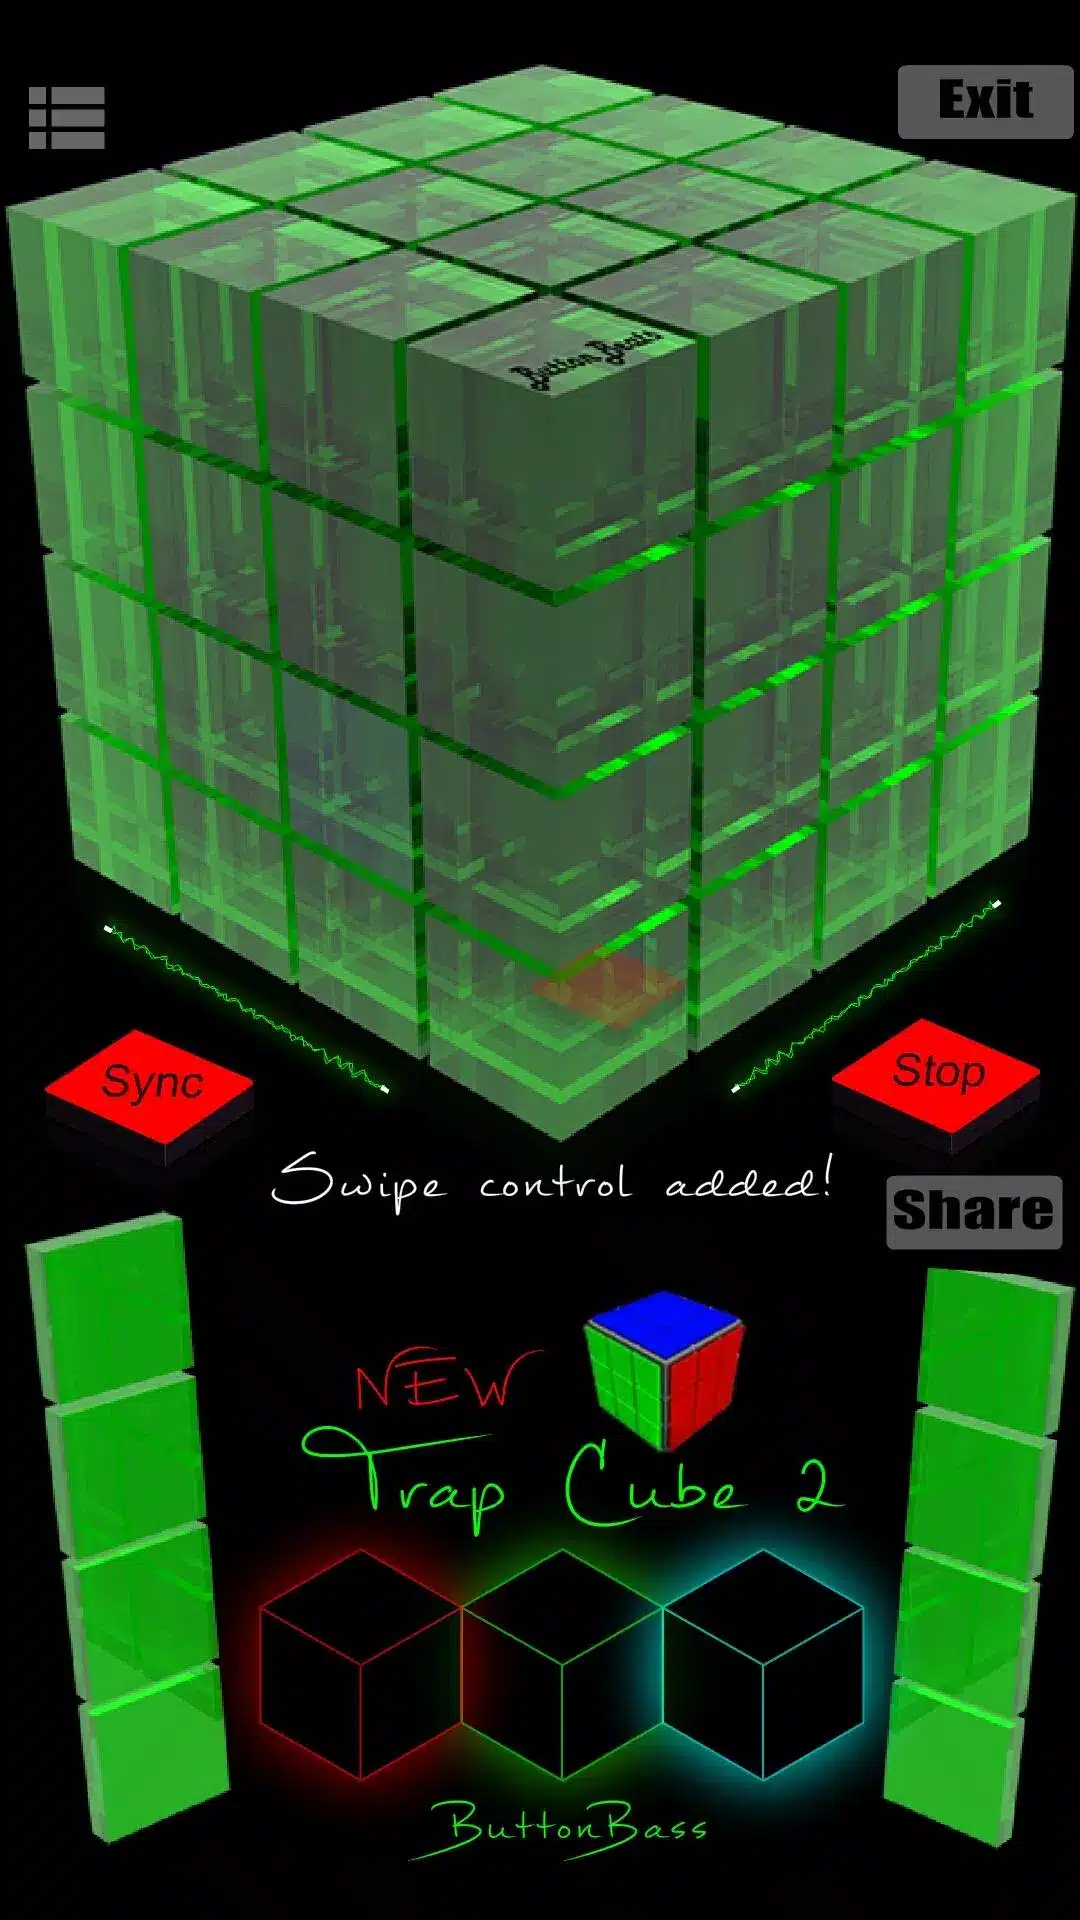 ButtonBass Dubstep Cube Image 1